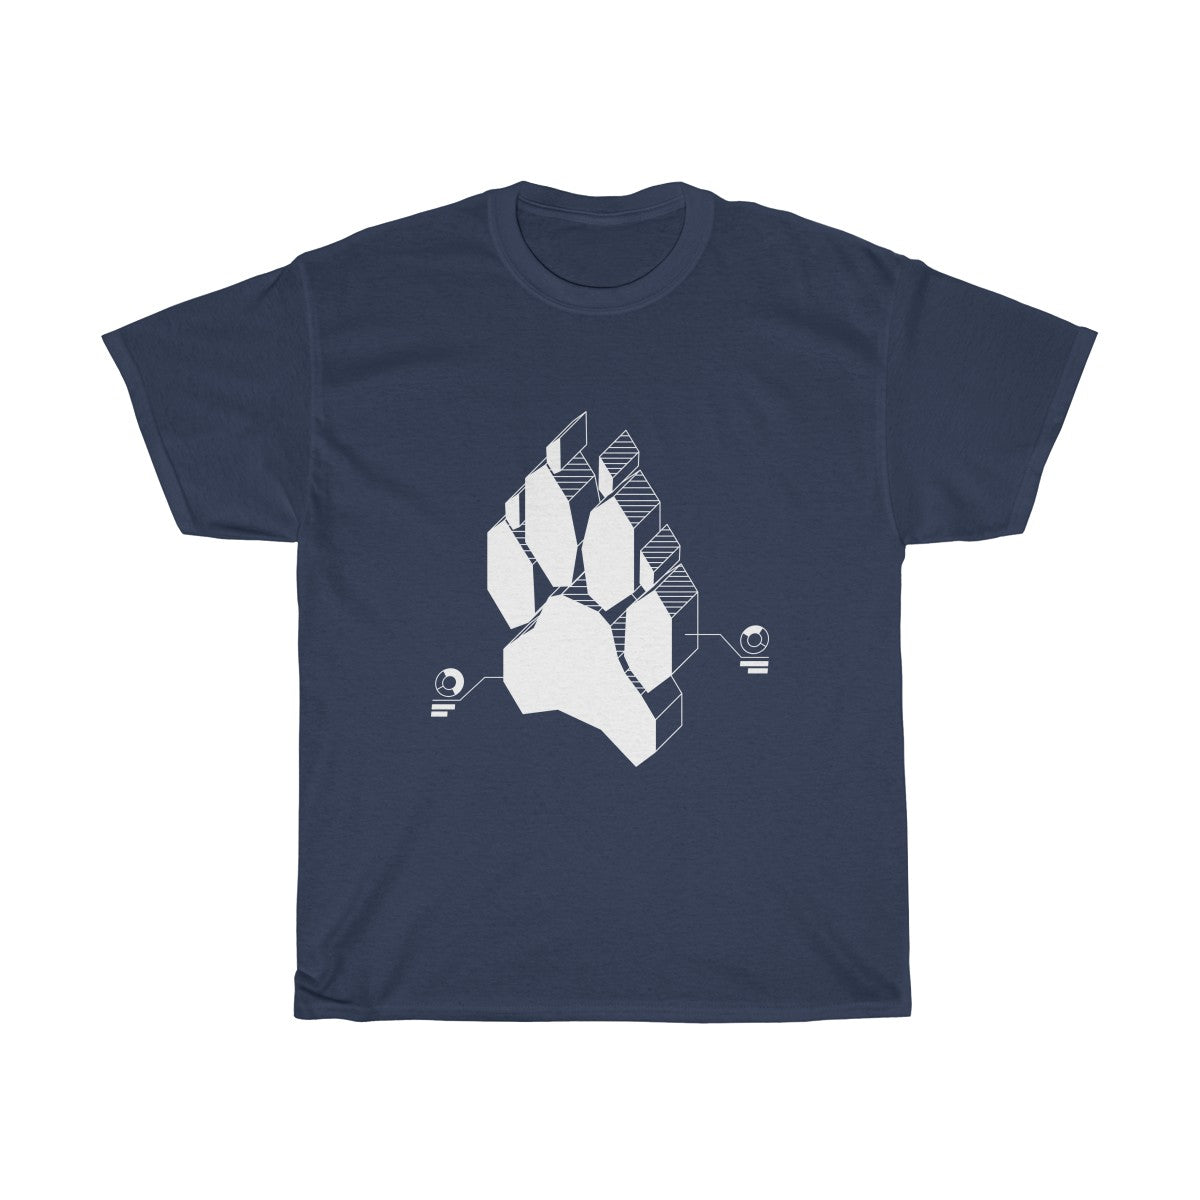 Techno Canine - T-Shirt T-Shirt Wexon Navy Blue S 